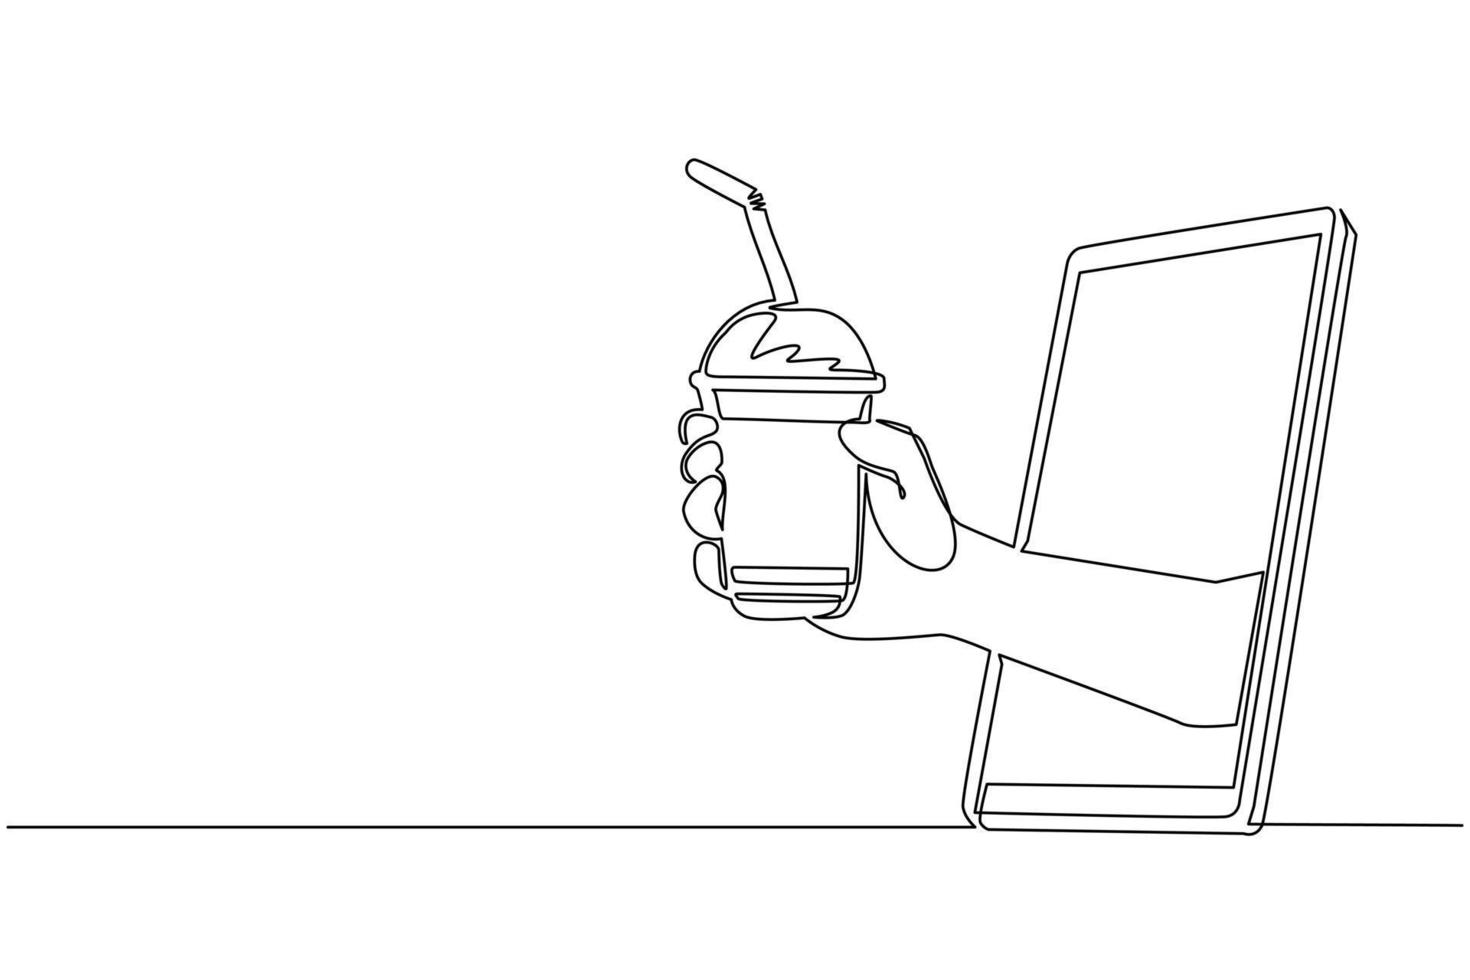 enkele een lijntekening hand met bubble tea cup met stro via mobiele telefoon. concept van café-drankbestelling online eten bestellen. applicatie voor smartphones. ononderbroken lijntekening ontwerp vector